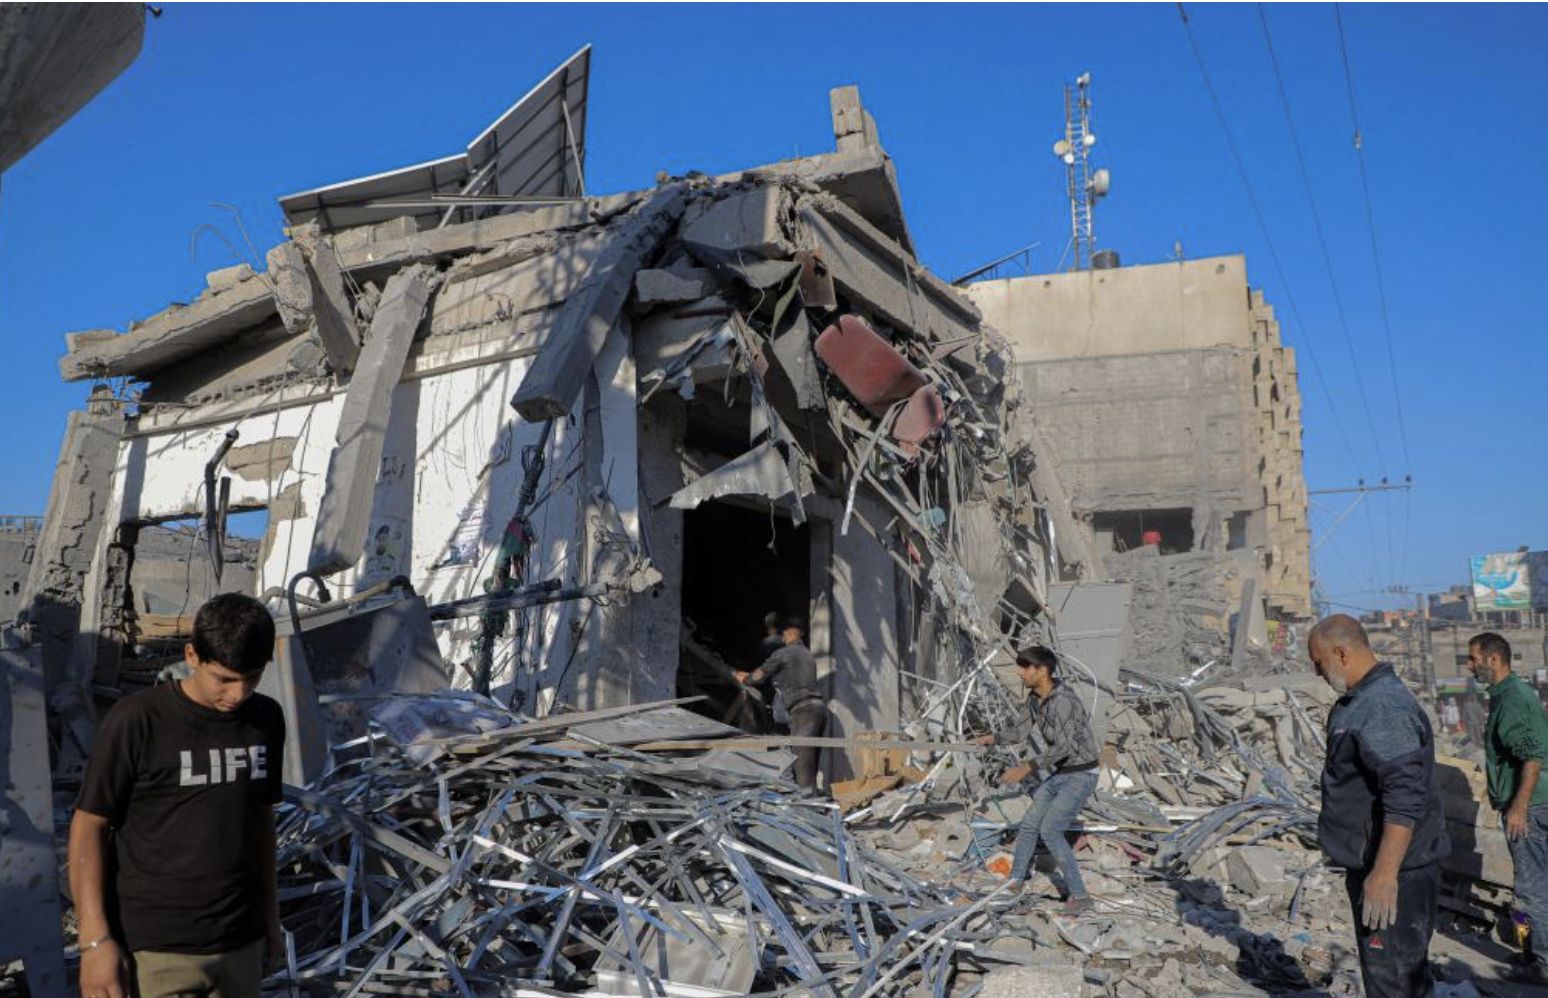 ▲加沙南部遭以色列袭击后的建筑废墟 图据新华社